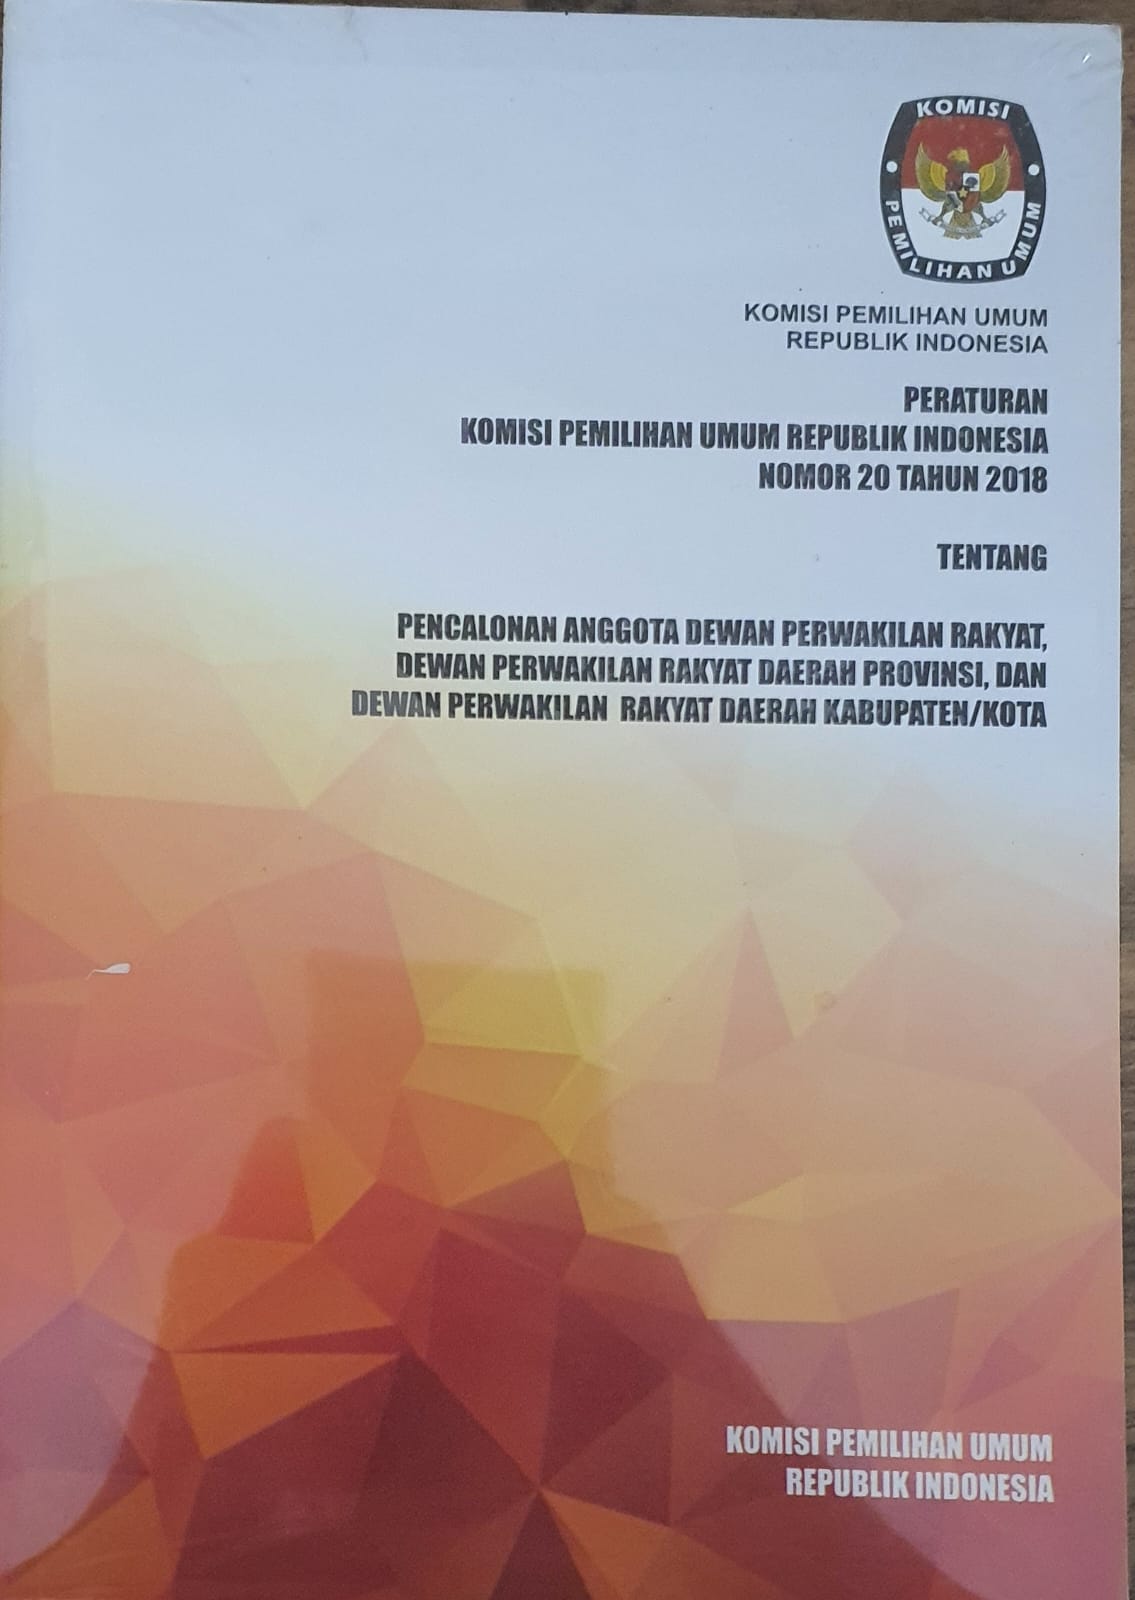 Peraturan Komisi Pemilihan Umum Republik Indonesia Nomor 20 Tahun 2018 tentang Pencalonan Anggota Dewan Perwakilan Rakyat,  Dewan Perwakilan Rakyat Daerah Provinsi, dan Dewan Perwakilan Rakyat Daerah Kabupaten/Kota  